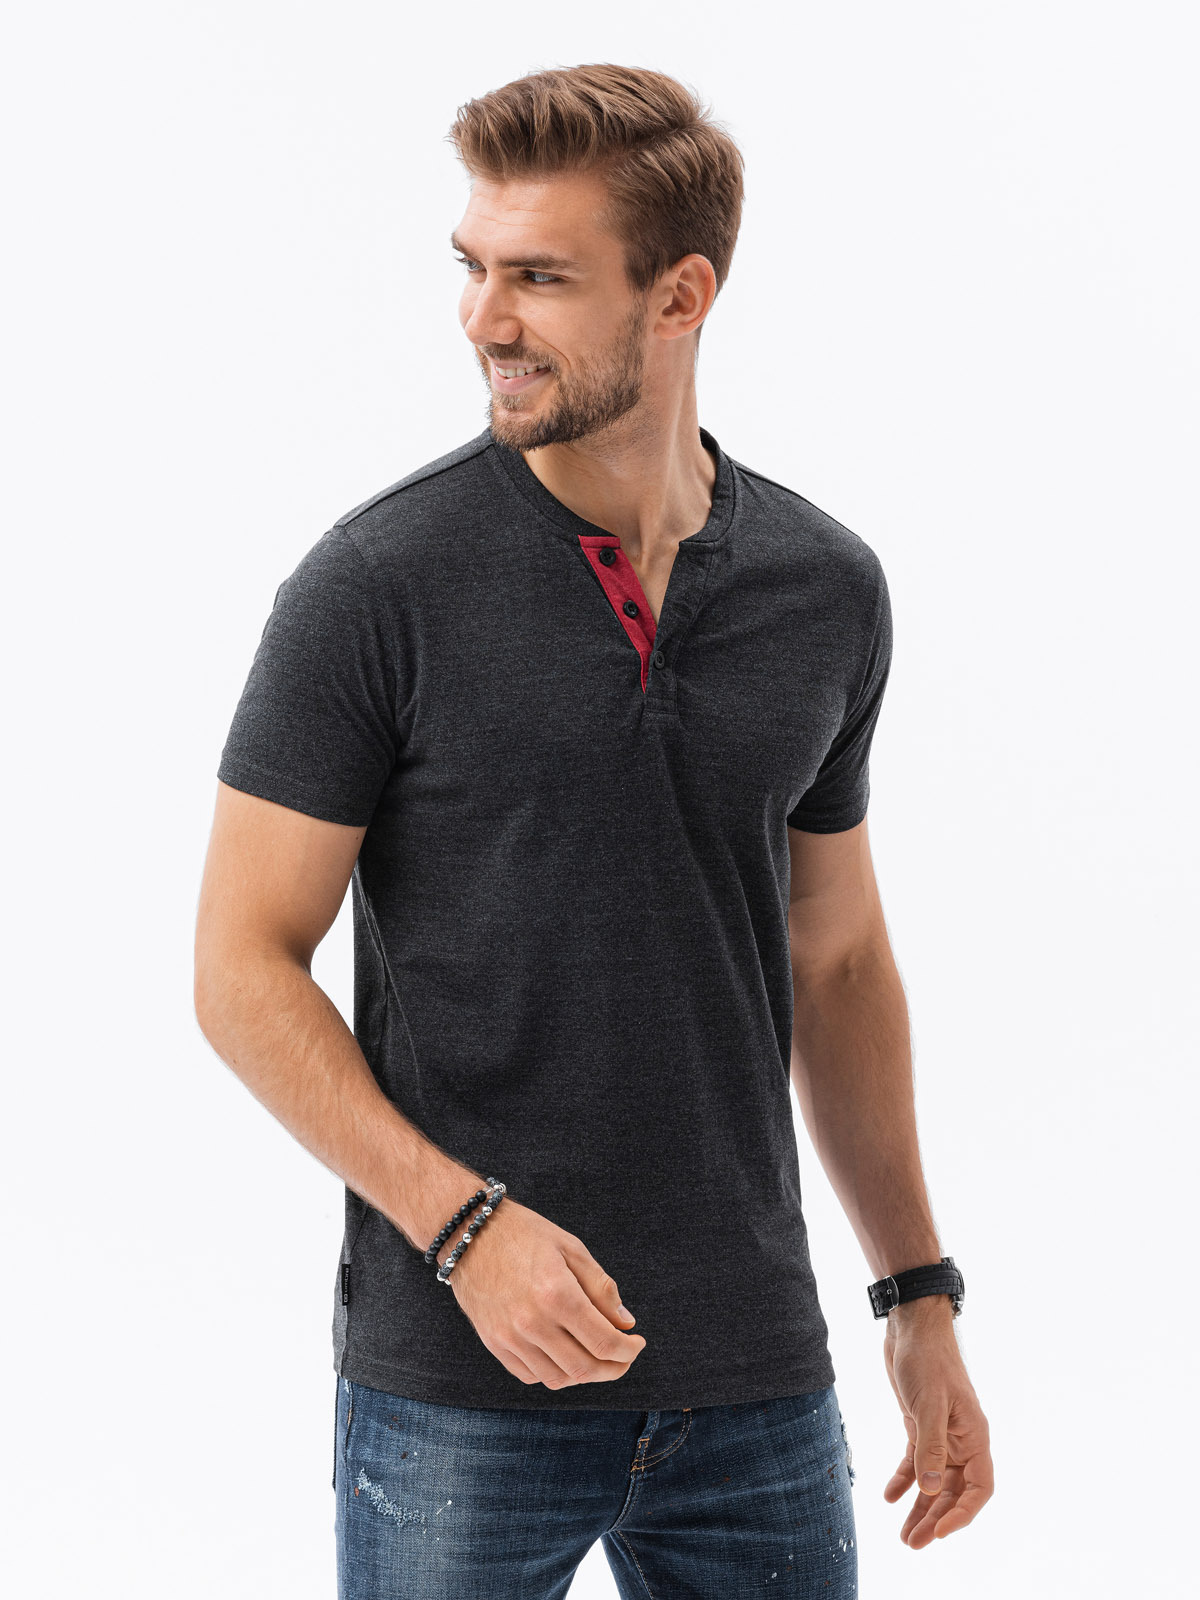 T-shirt męski bez nadruku z guzikami - czarny melanż V4 S1390